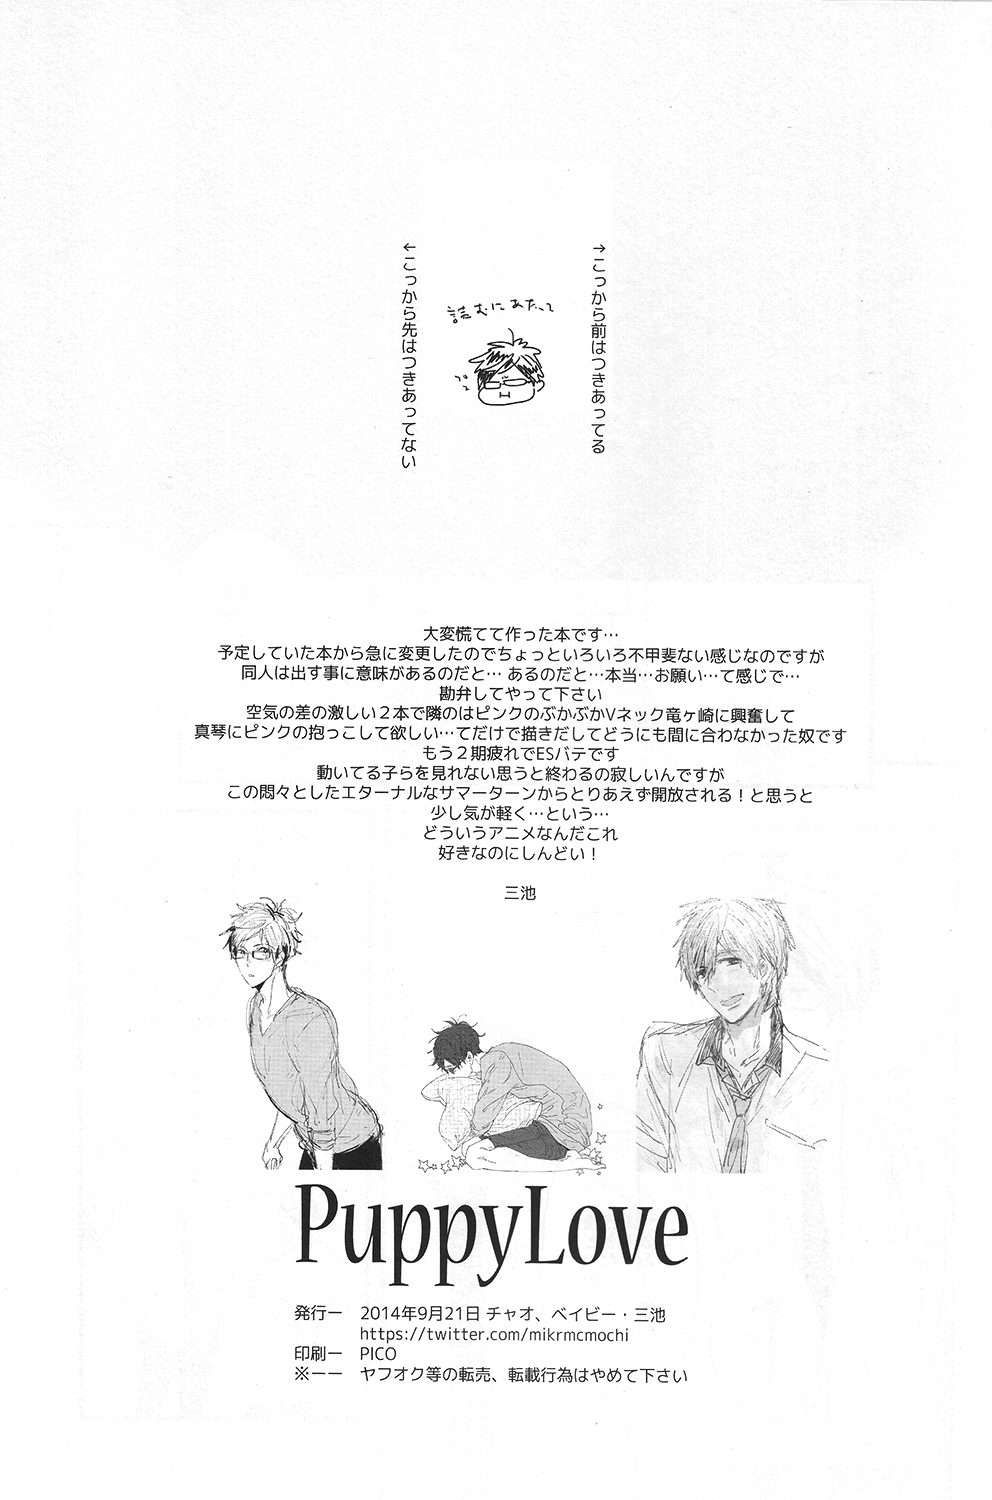 (Splash!) [Ciao, baby (Miike Romuko)] Puppy Love (Free!) (Splash!) [チャオ、ベイビー (三池ろむこ)] PuppyLove (Free!)